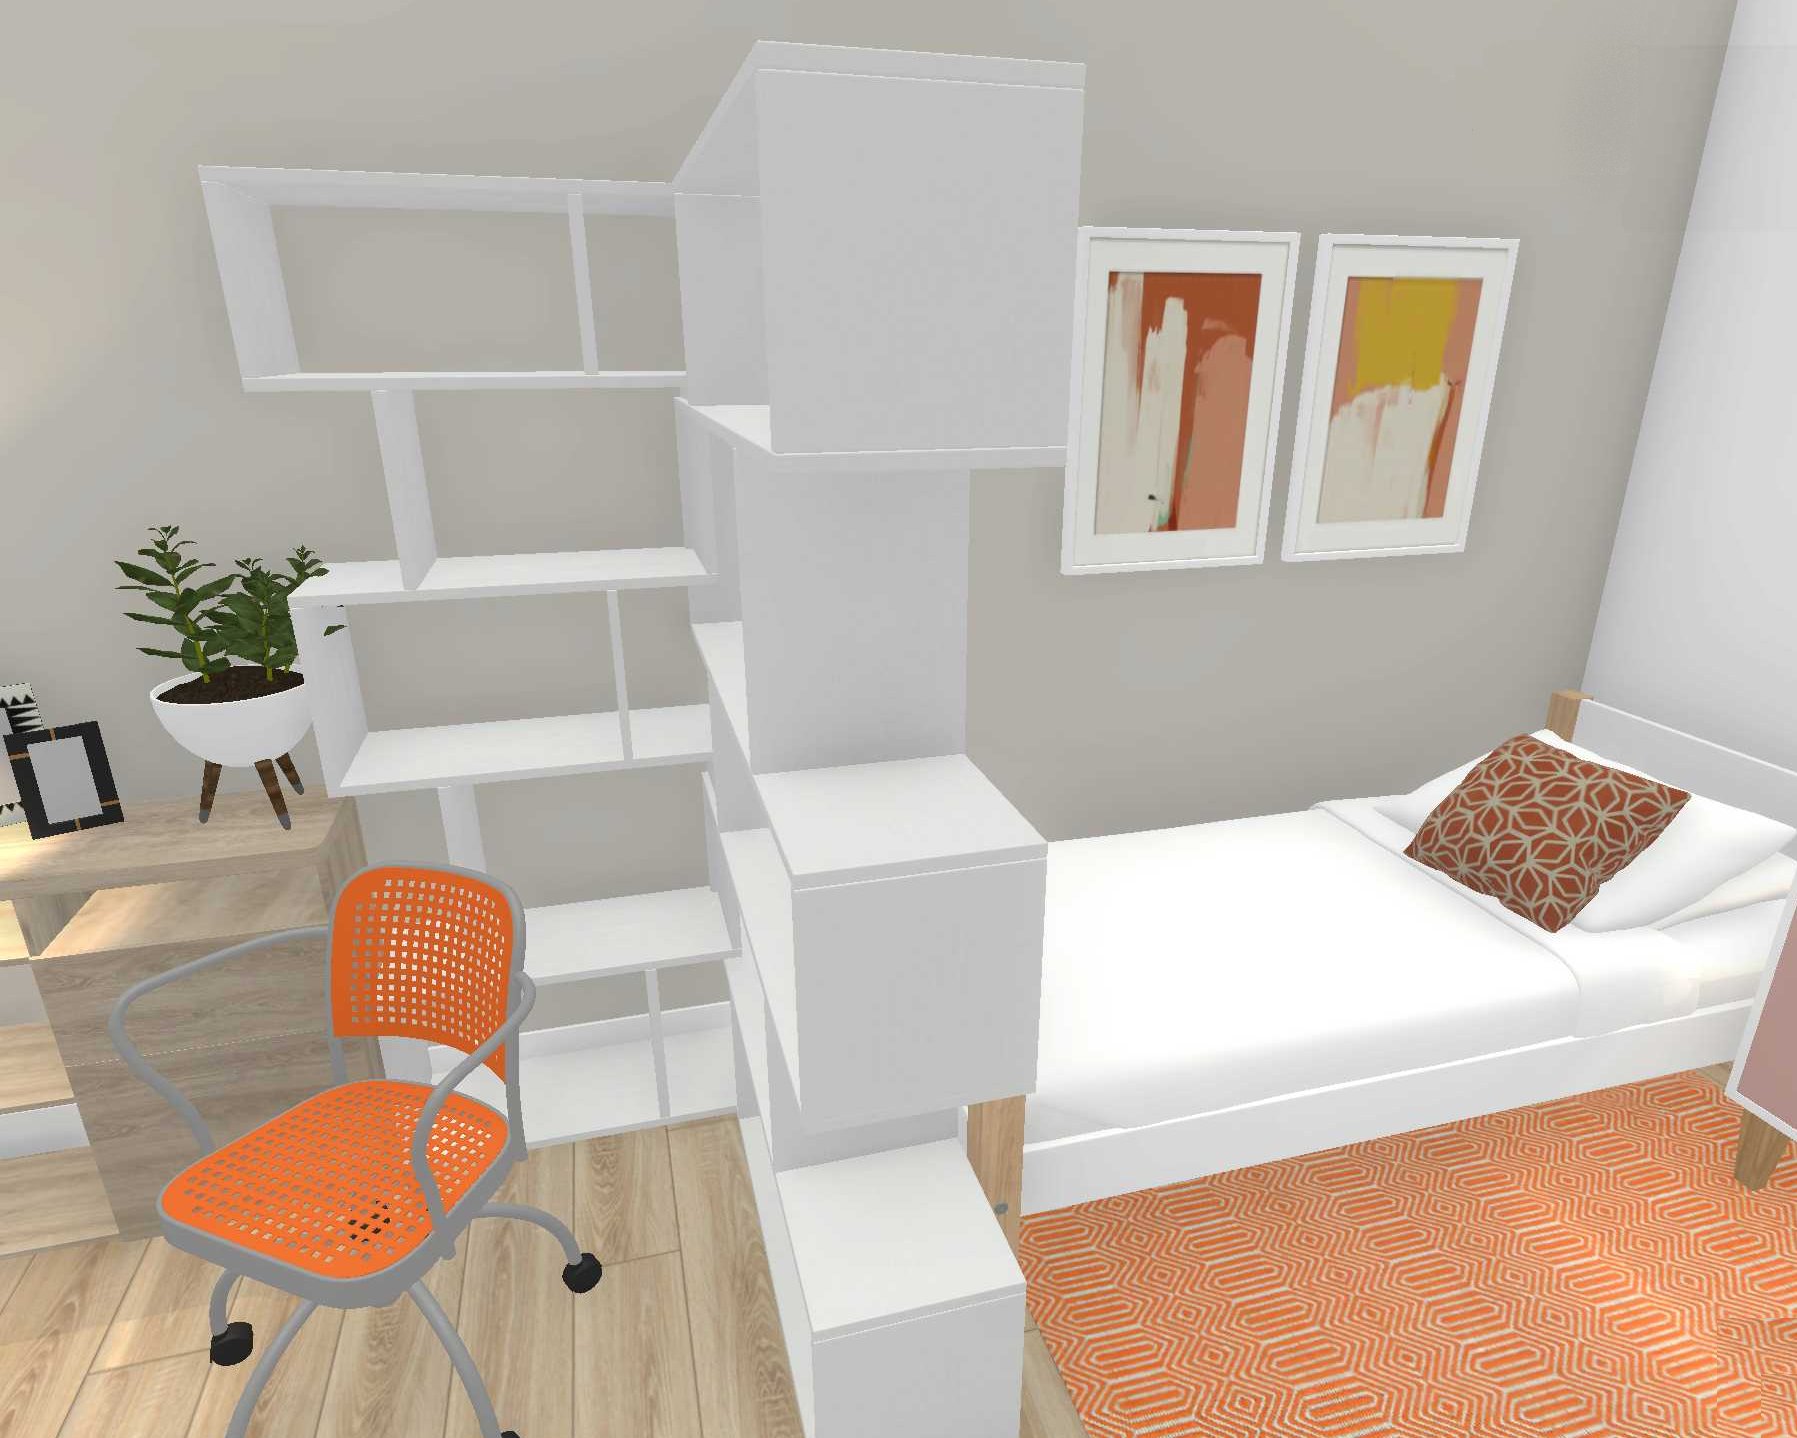 Students bedroom design